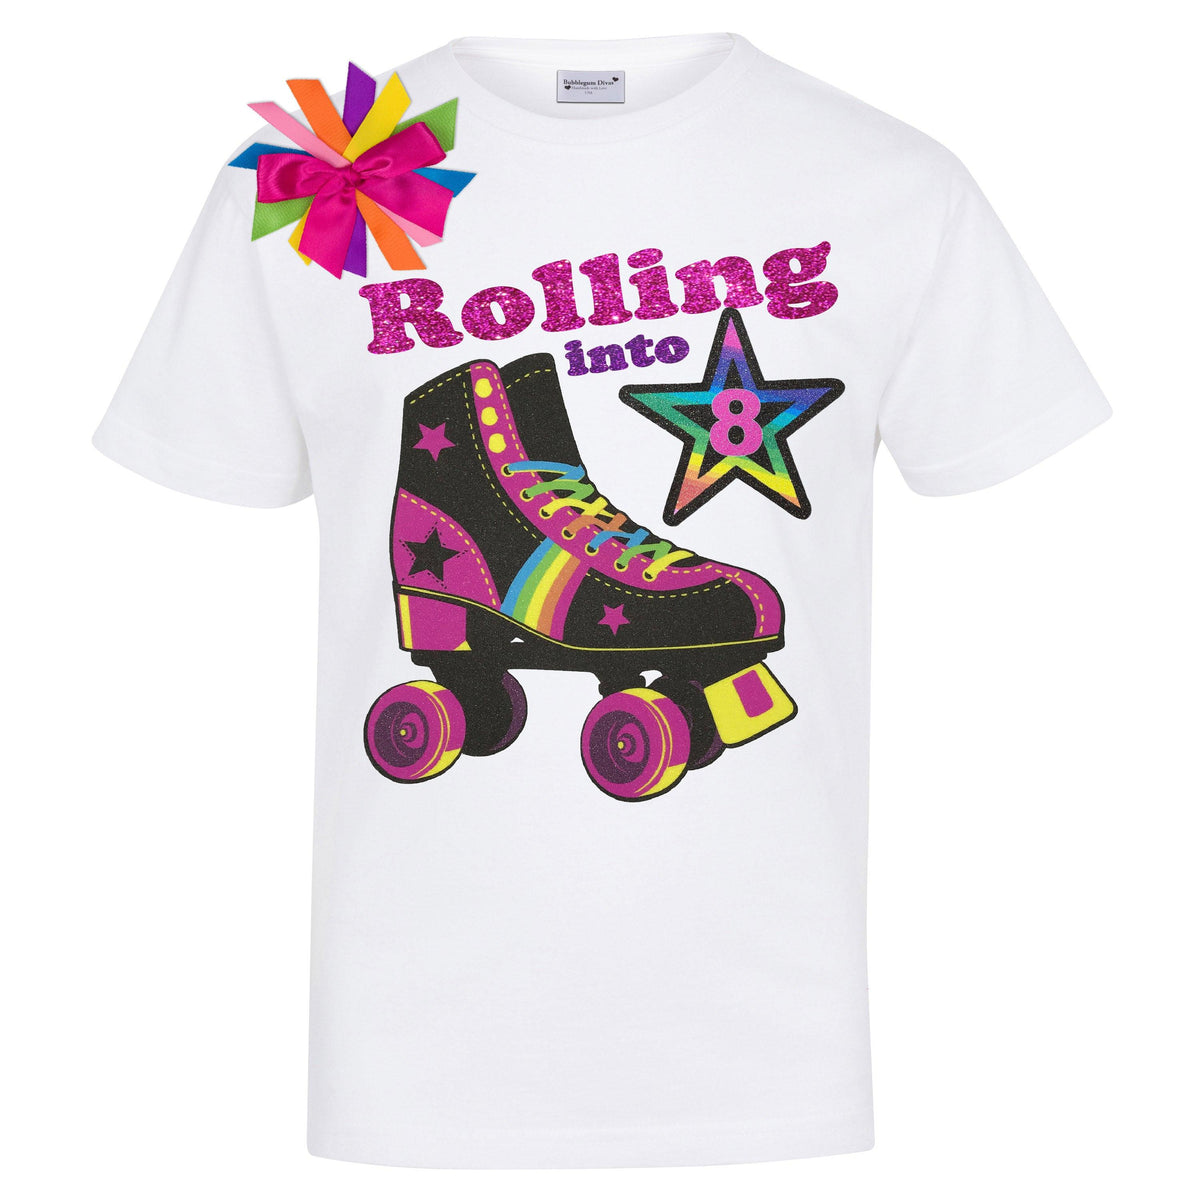 Girls Birthday Shirt White Roller Skate Graphic Tee Shirt 